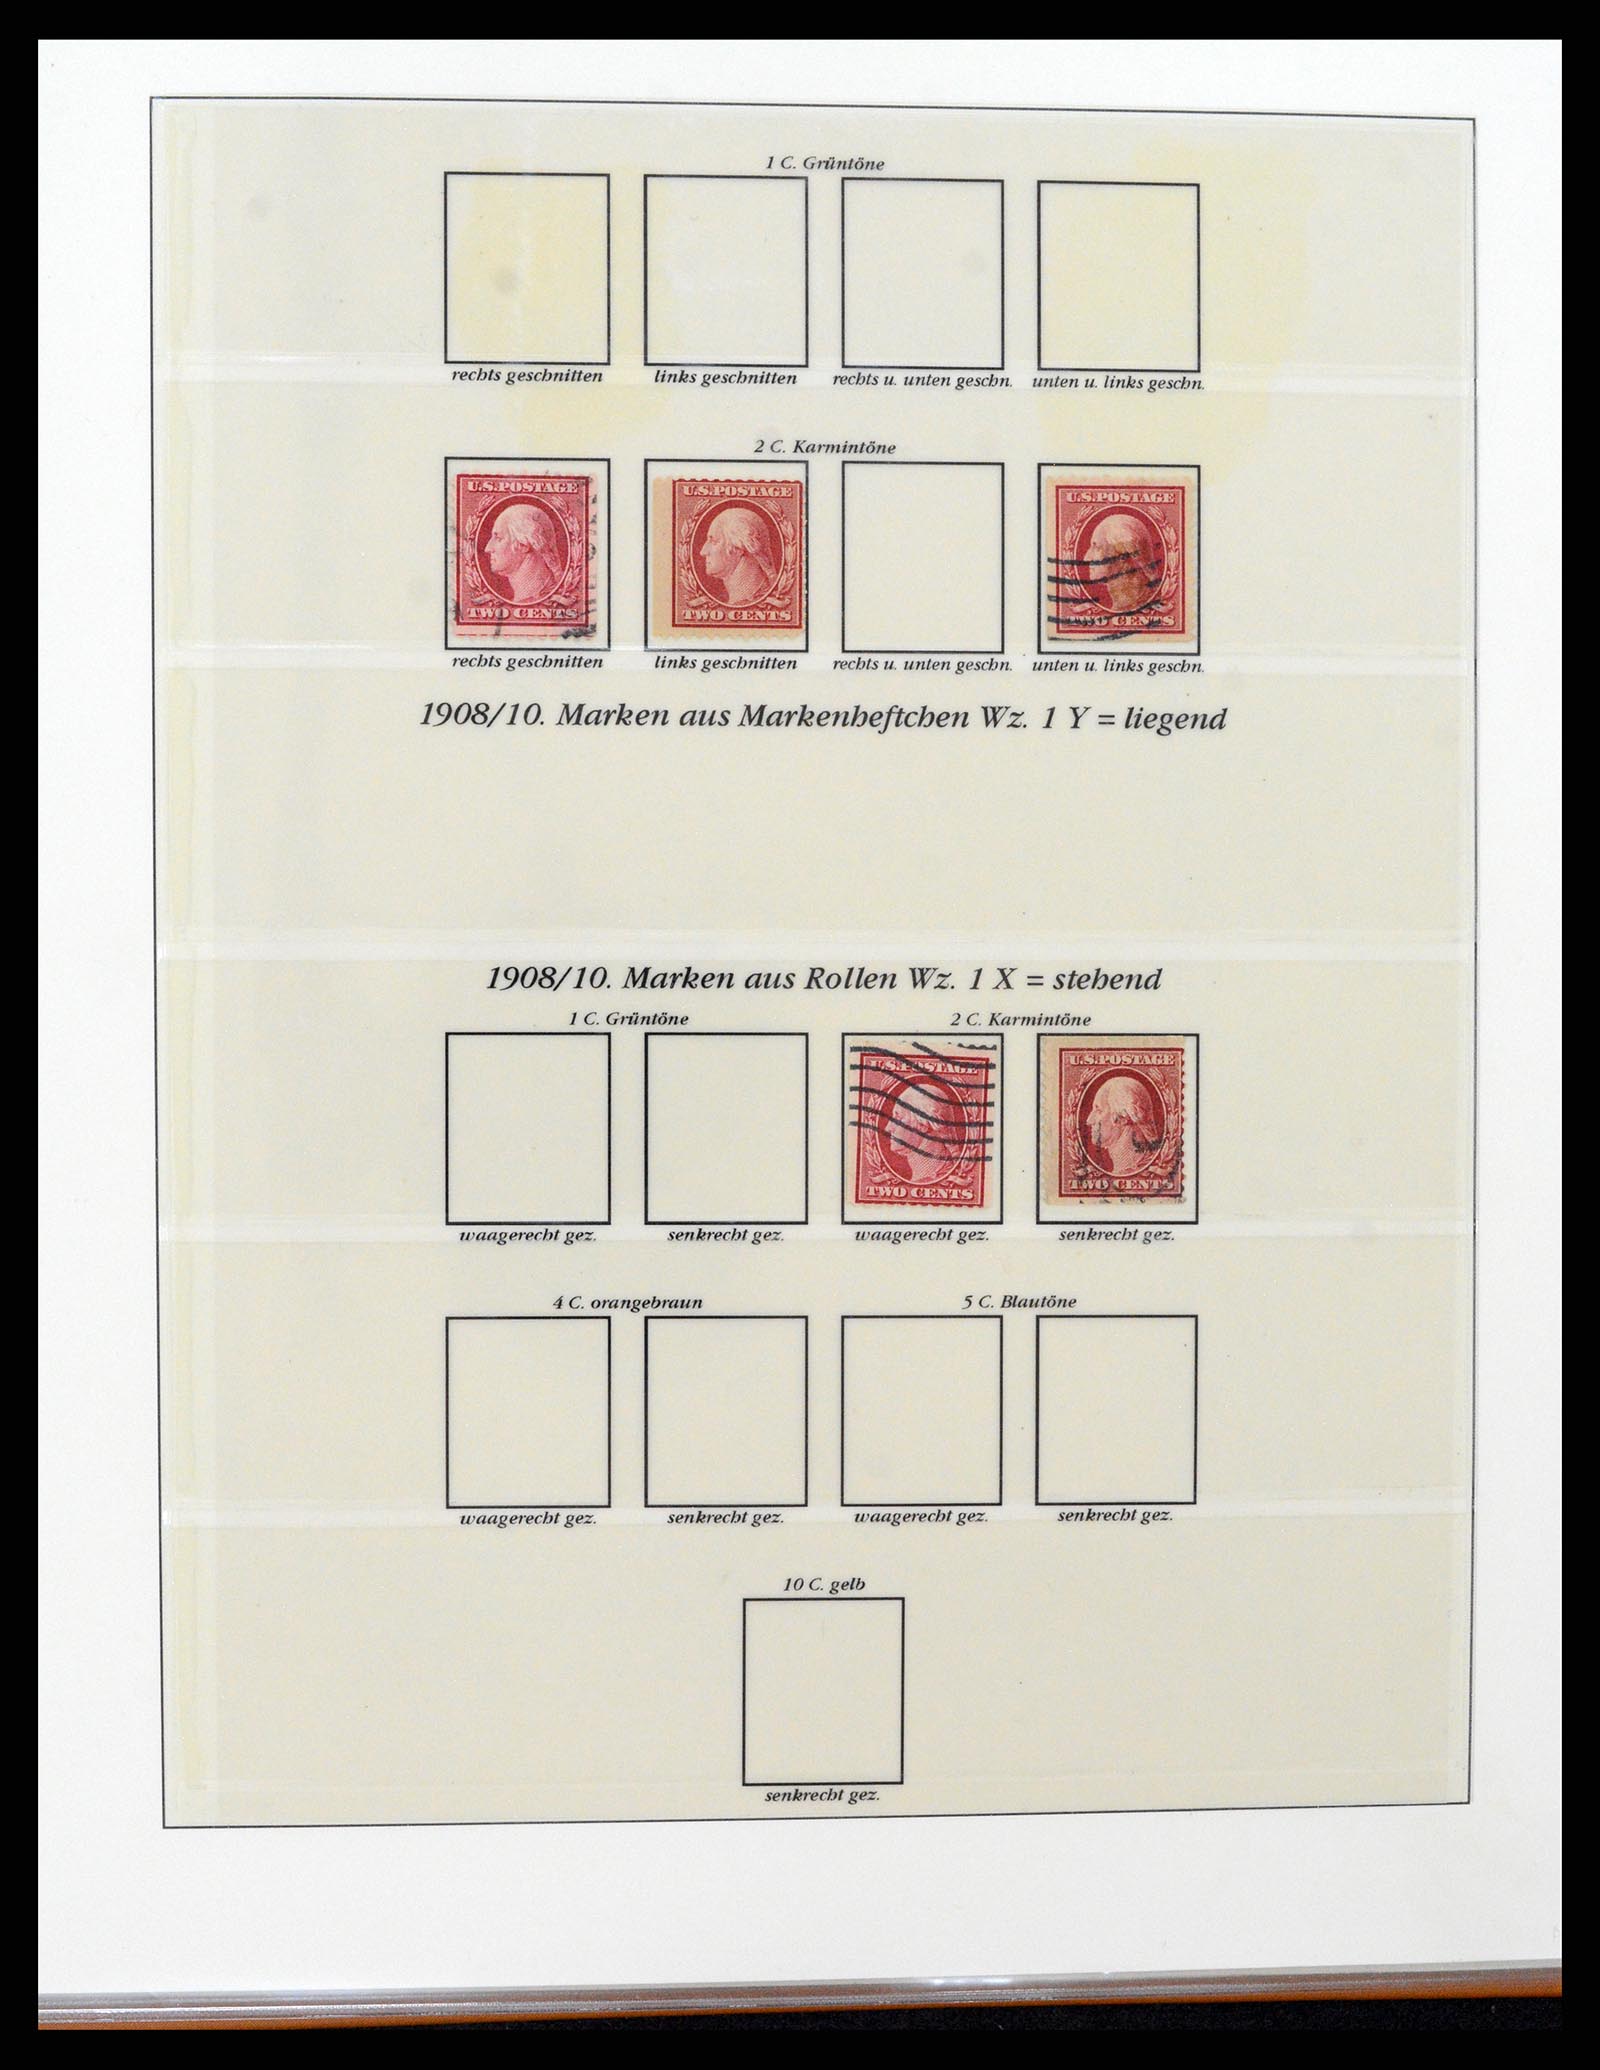 37653 037 - Stamp collection 37653 USA 1870-1954.